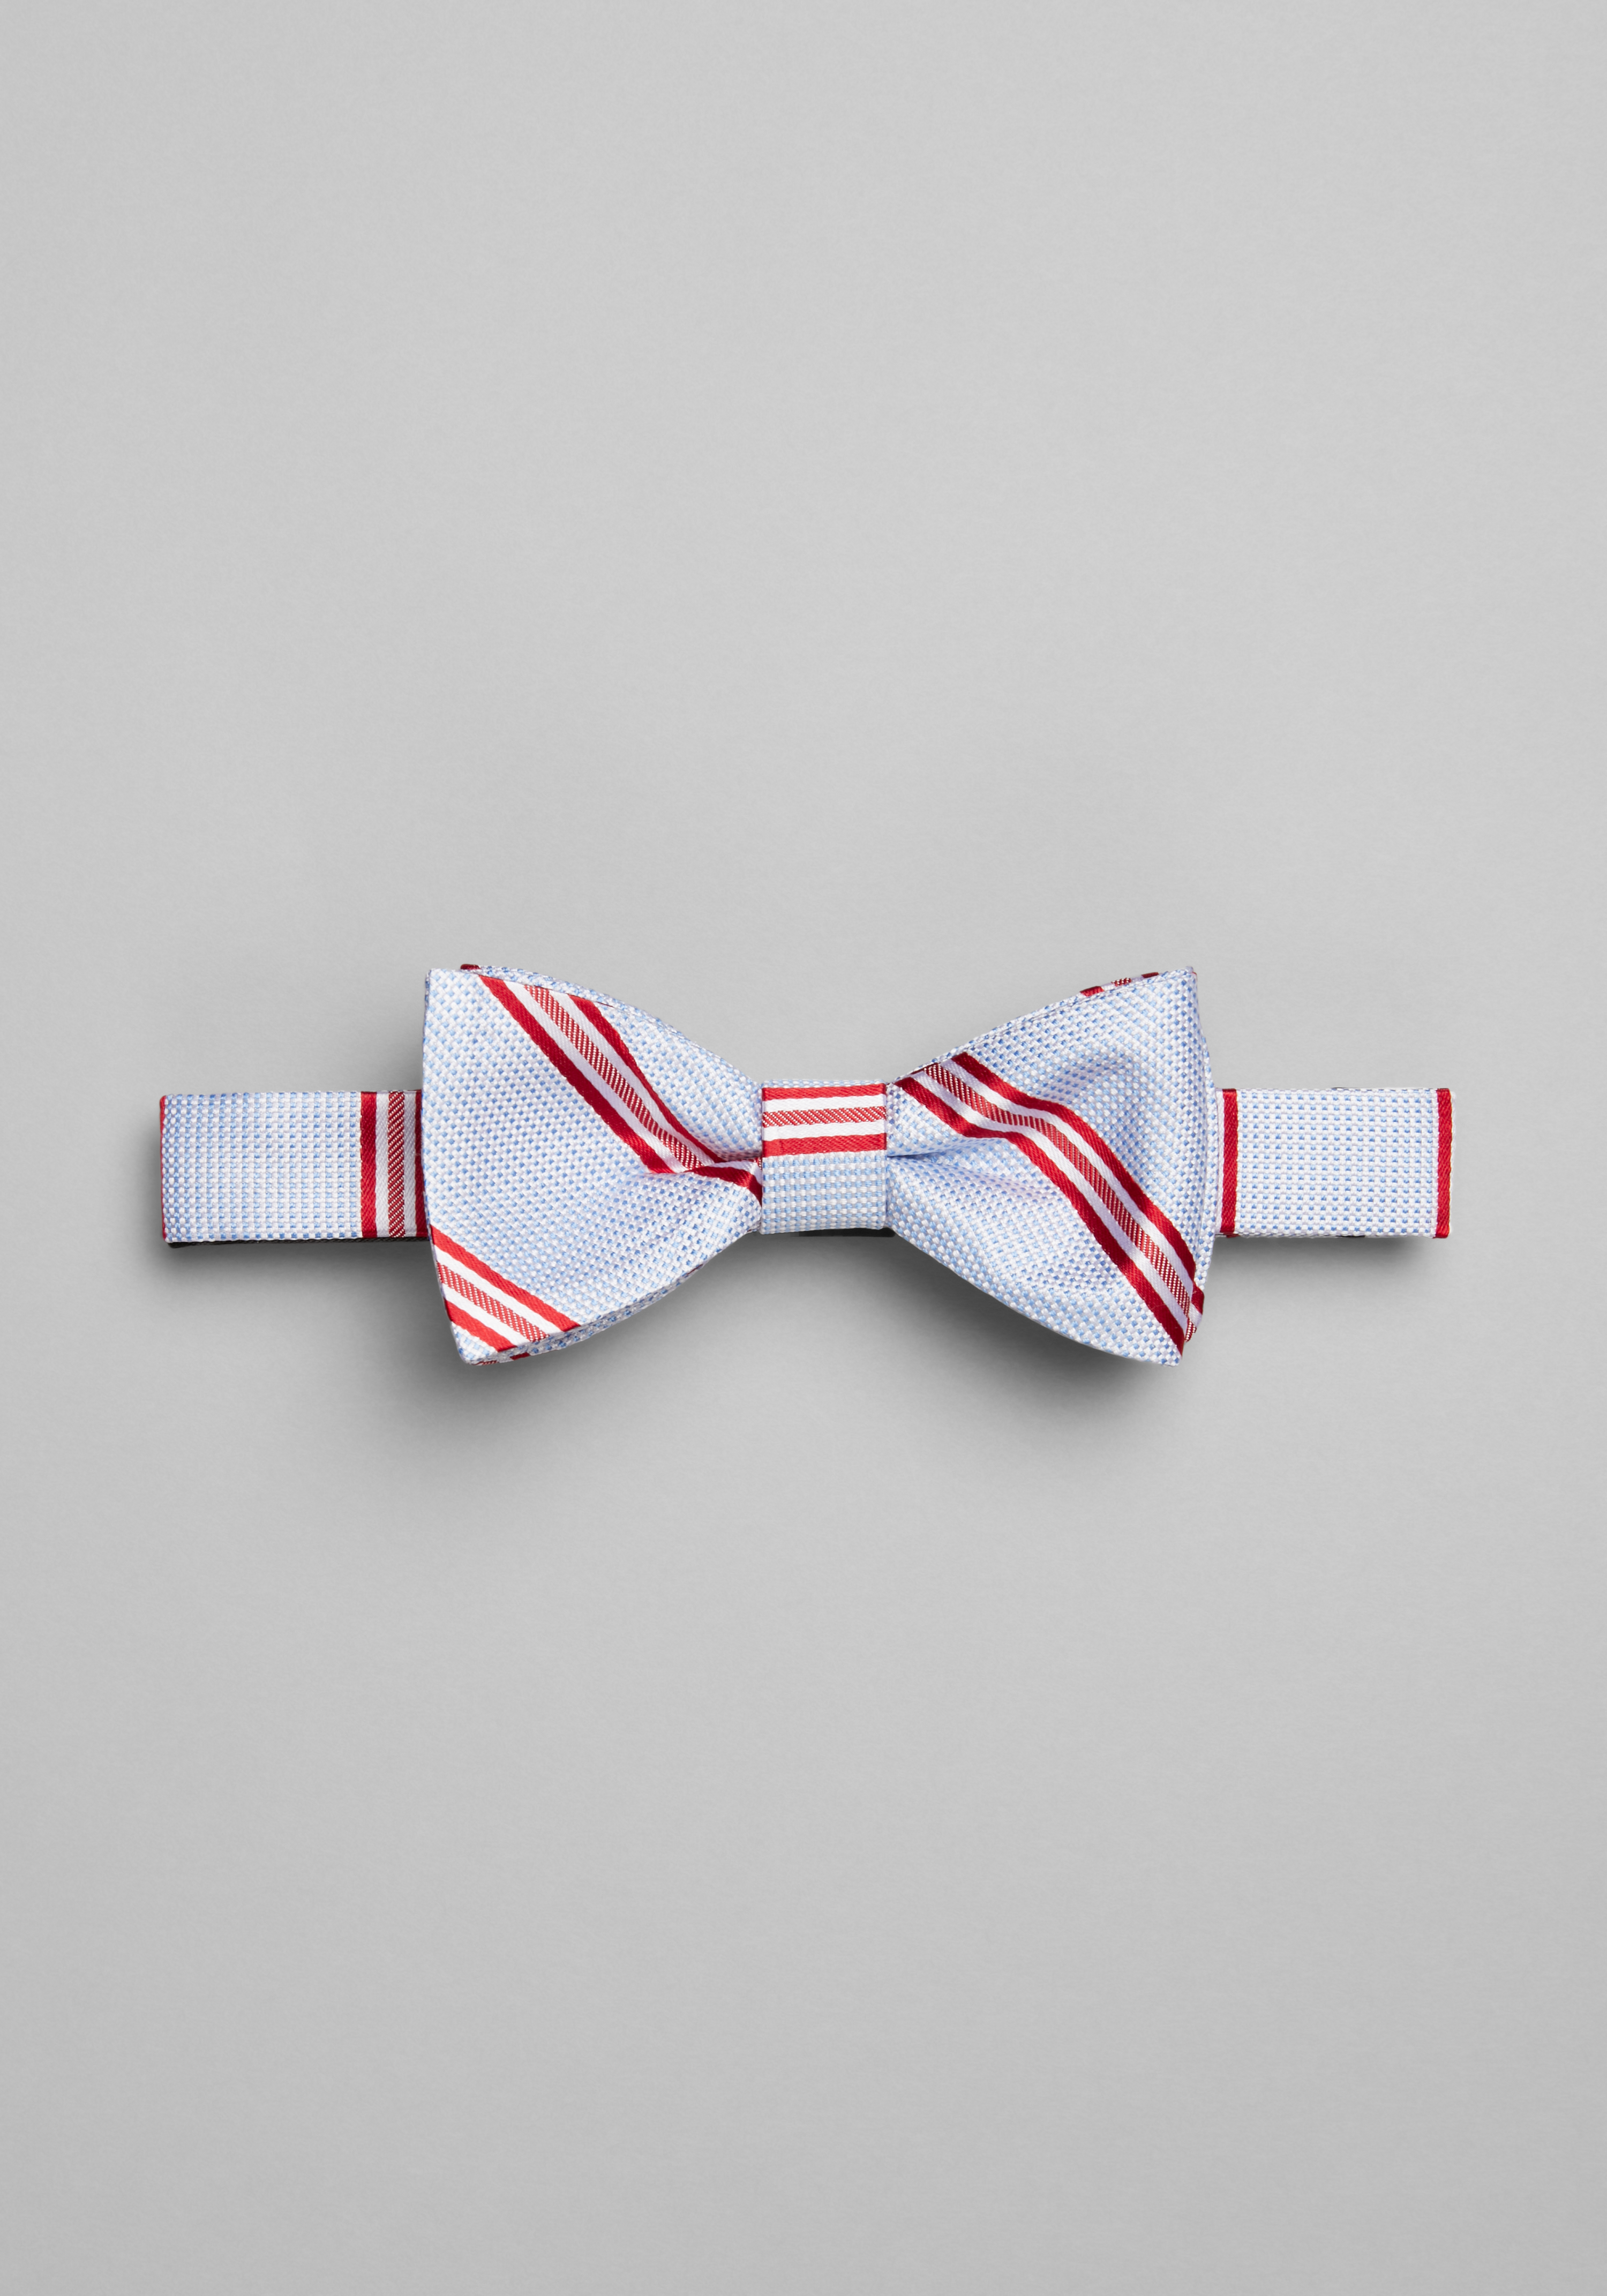 Jos. A. Bank Spring Stripe Pre-Tied Bow Tie - All Accessories | Jos A Bank